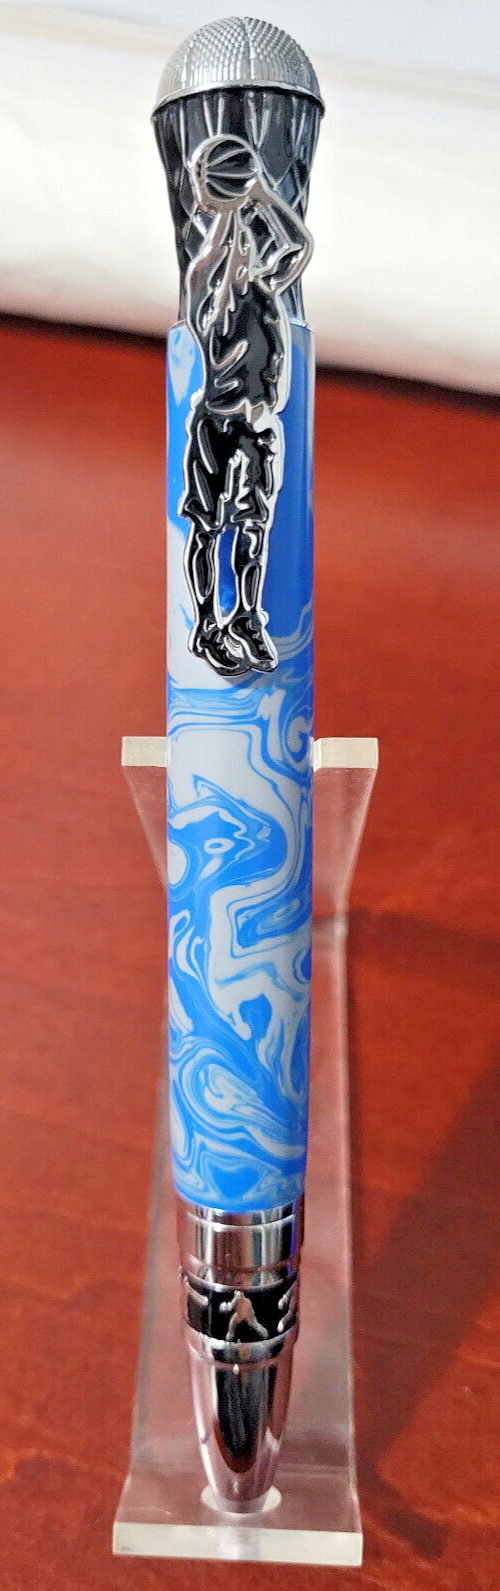 Duke Devils Basketball Ballpoint Pen Veteran Hand Turned Blue And Gray Acrylic